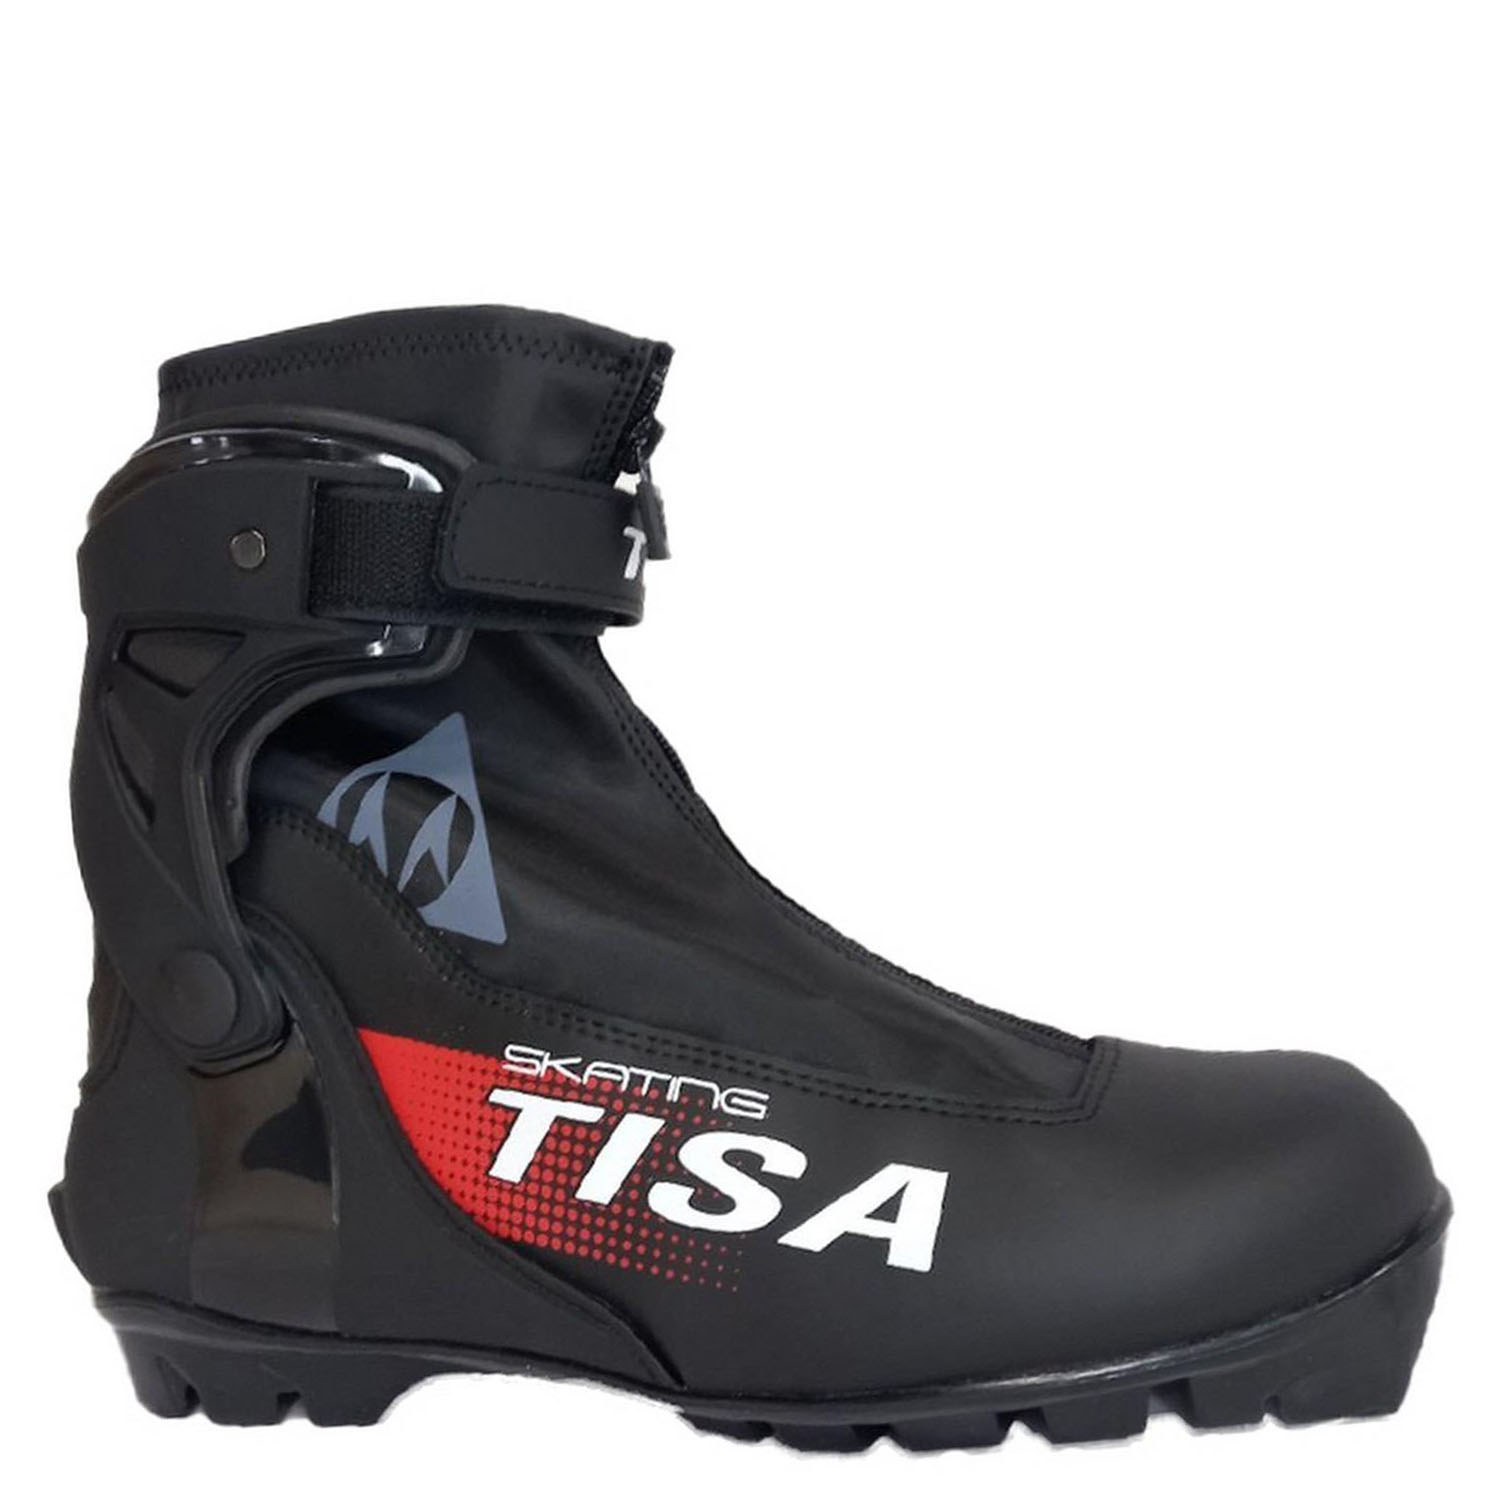 Ботинки NNN Tisa Skate 42р. (стелька 26.5см.) черный-красный